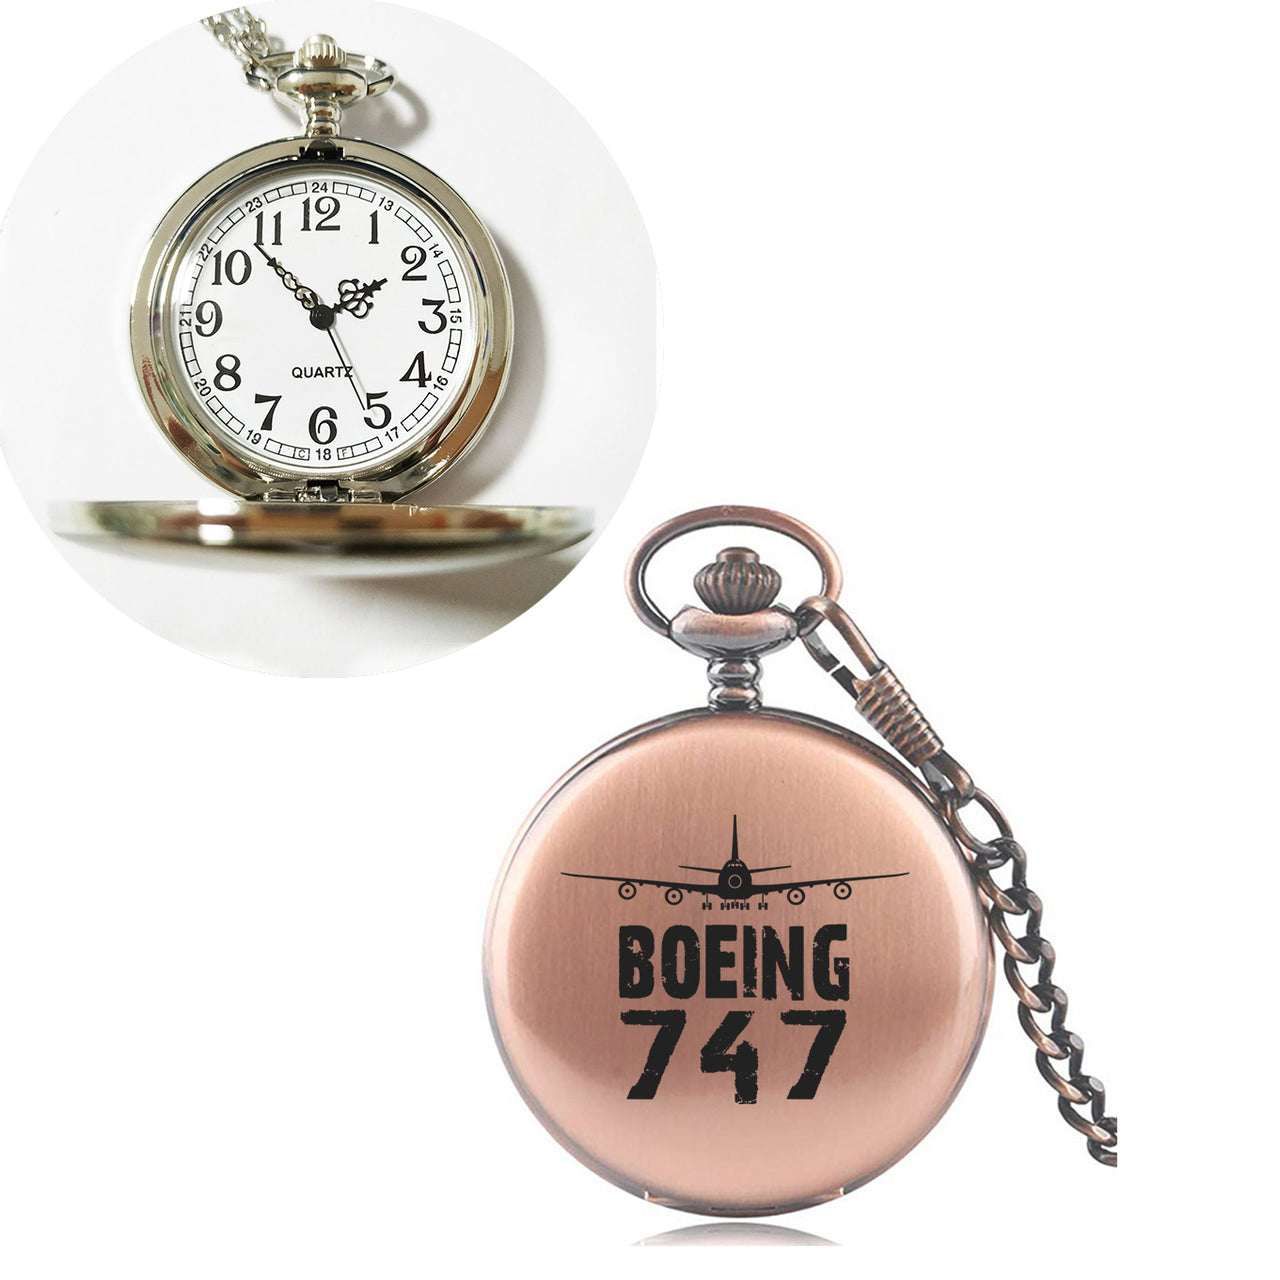 Boeing 747 & Plane Designed Pocket Watches